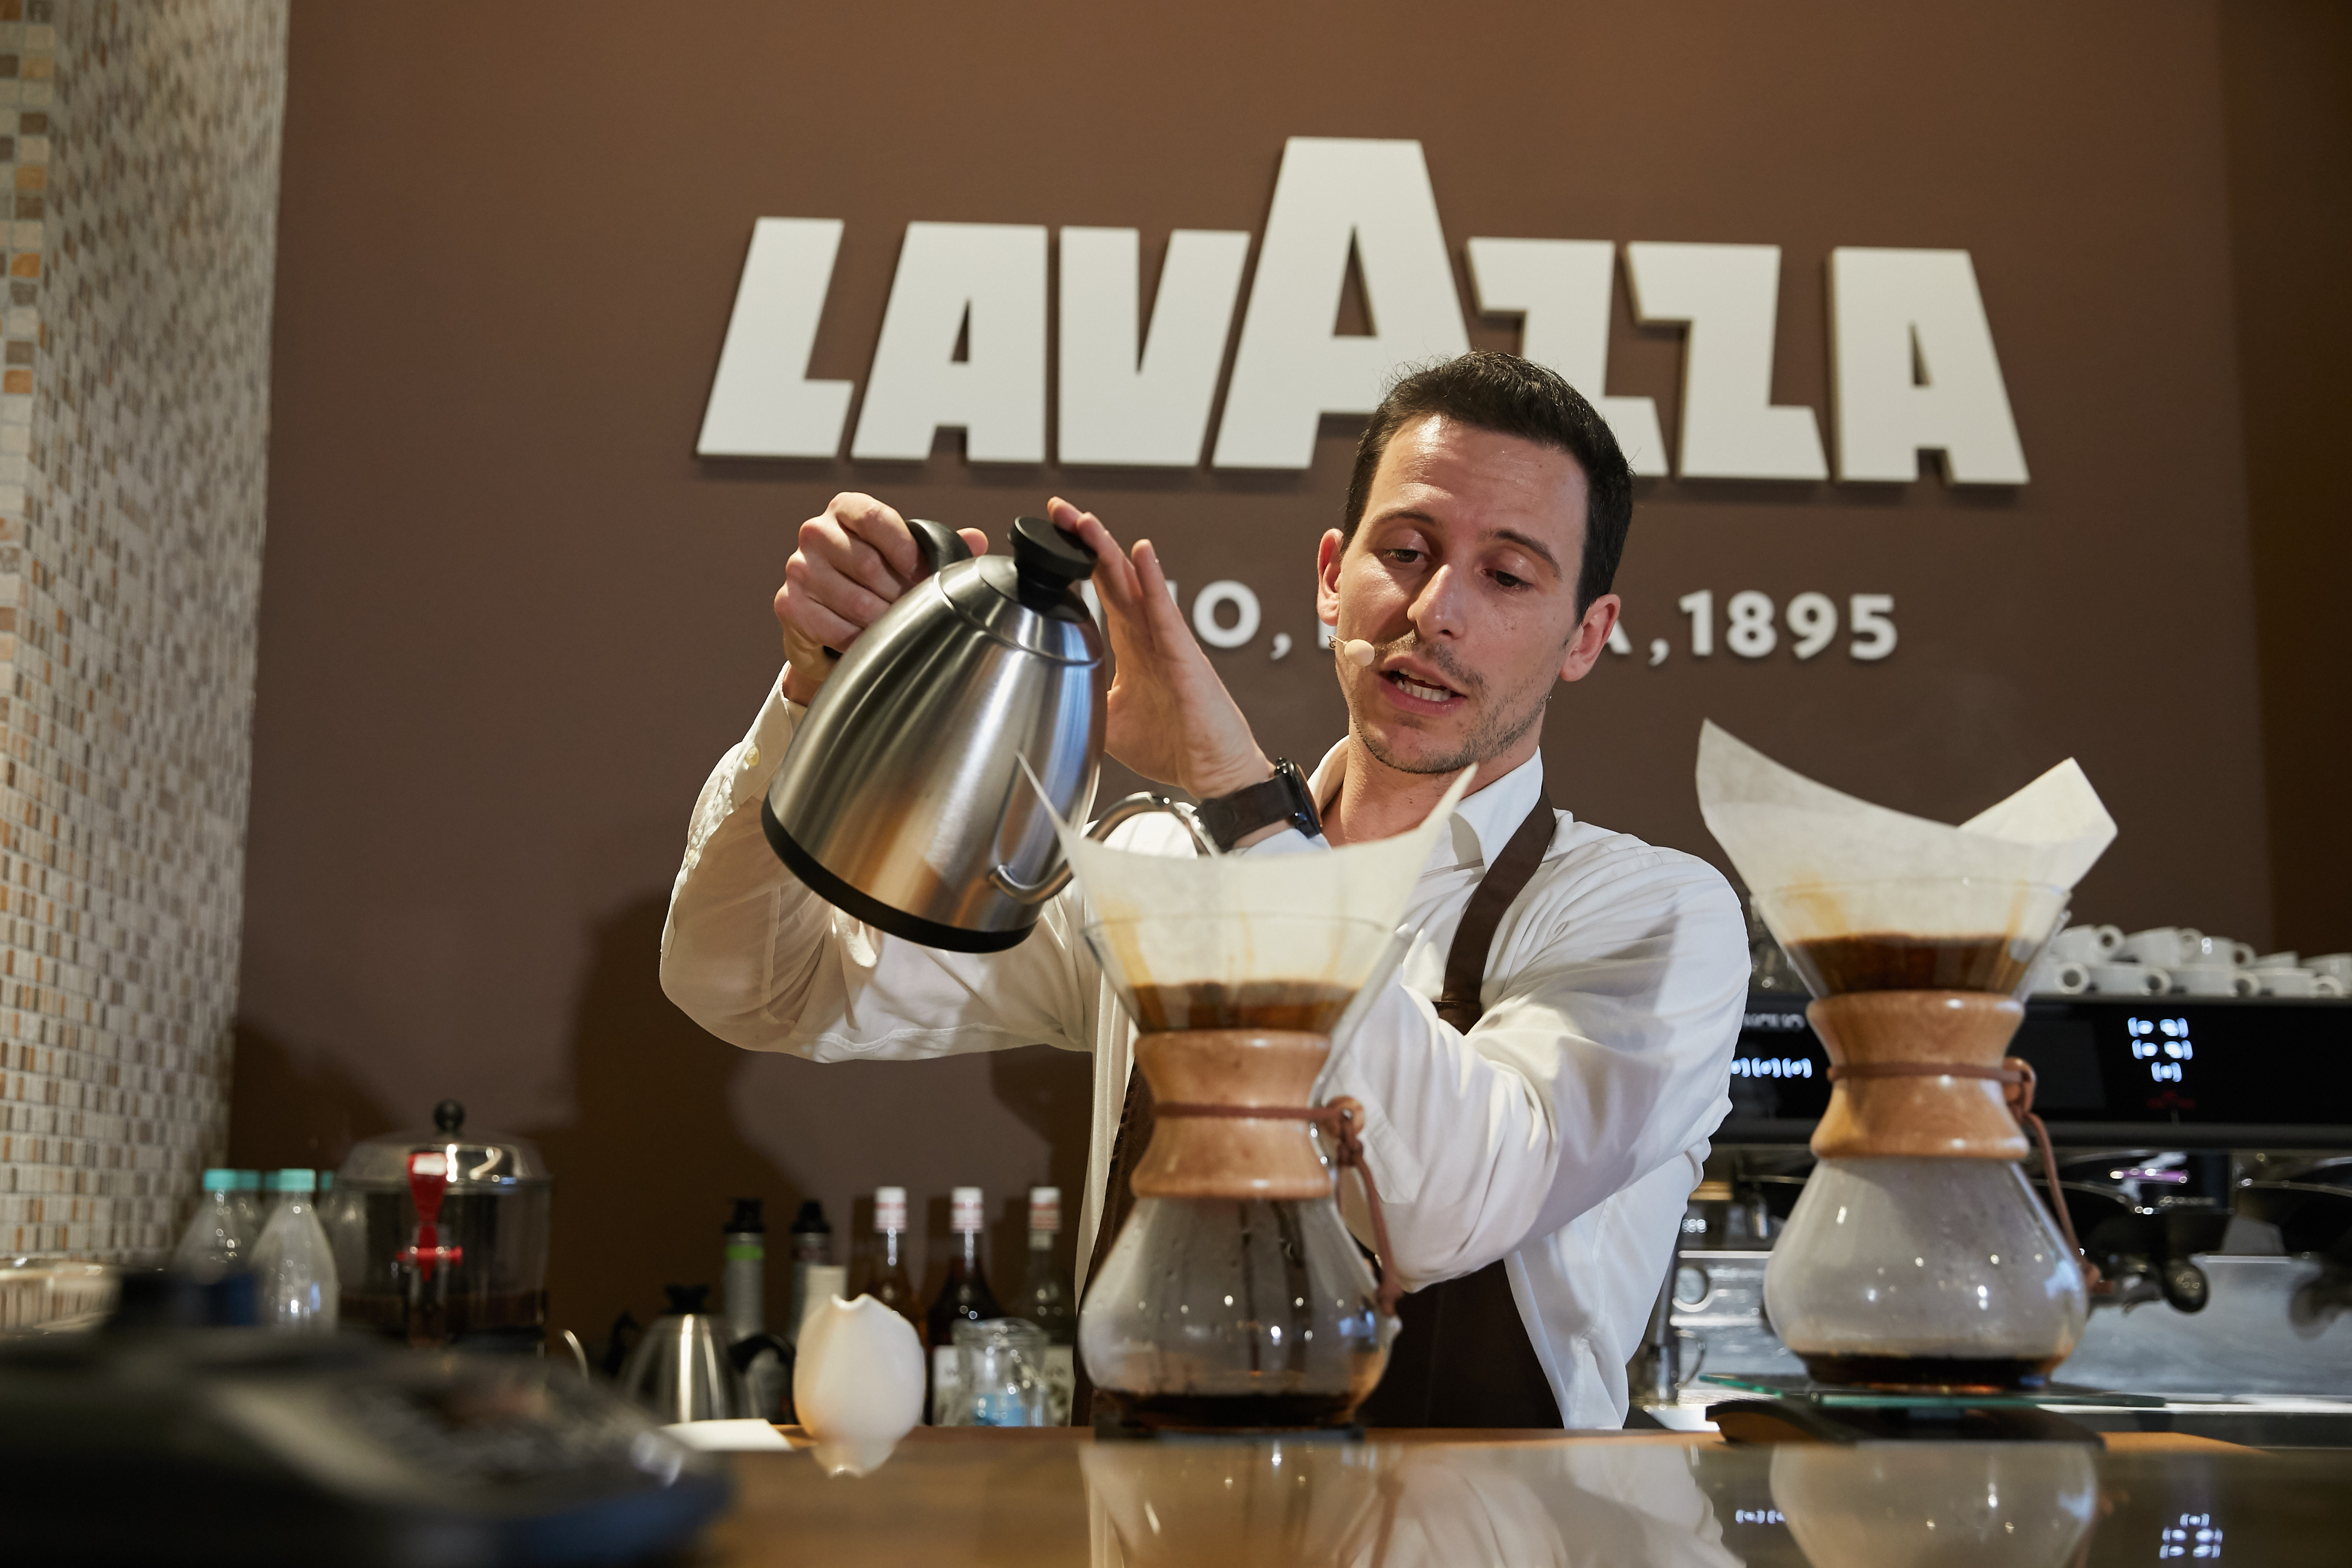 Реклама итальянское качество. Реклама кофе Lavazza. Итальянский кофе реклама. Лавацца реклама. Реклама кофе Лавацца.